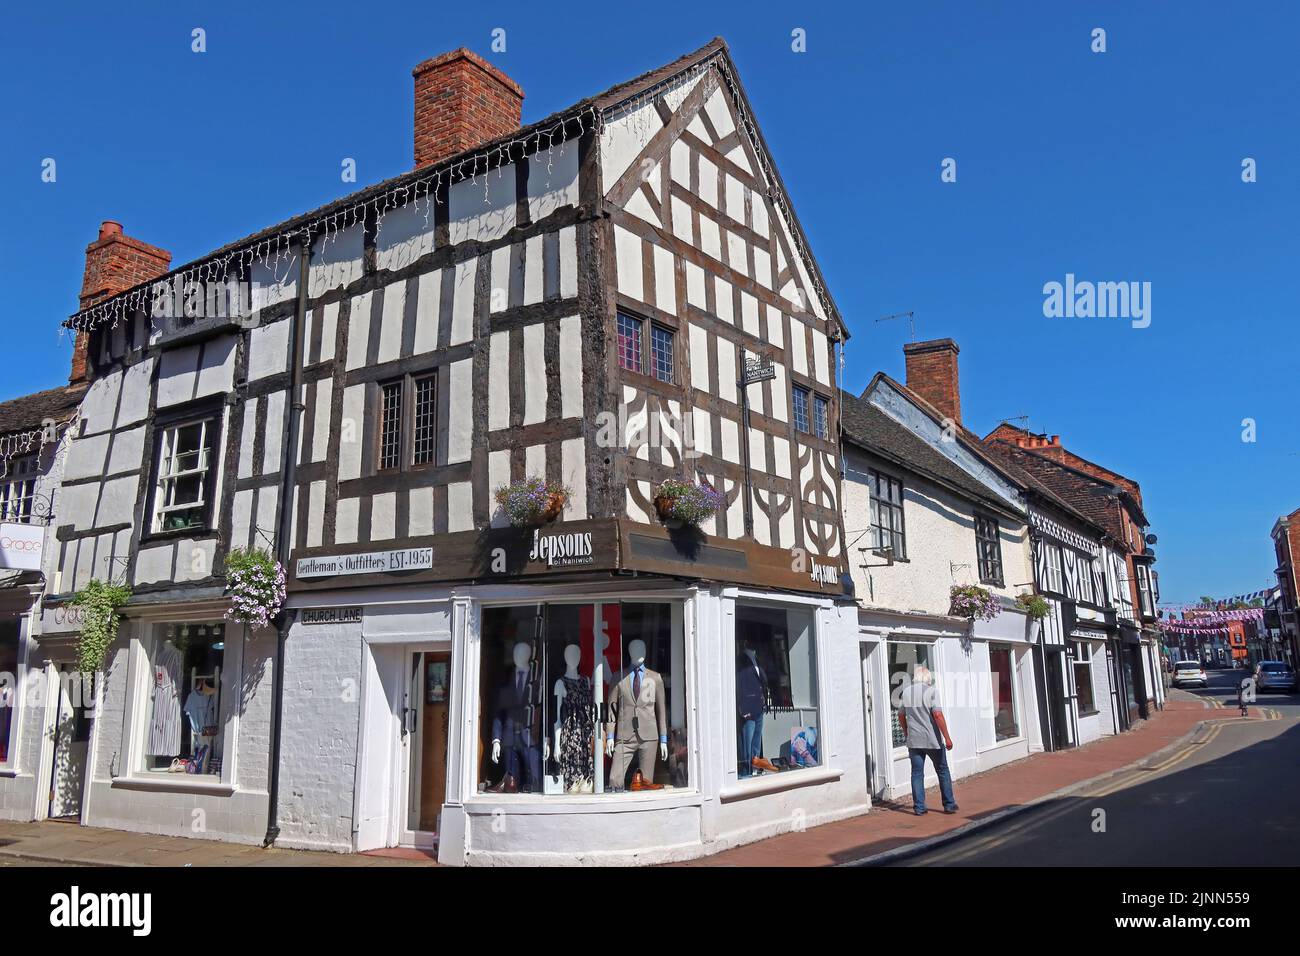 Bâtiment traditionnel Tudor à pans de bois, magasin de vêtements Jepsons, Jepsons de Nantwich , 9-13 Hospital St, Nantwich, Cheshire, Angleterre, ROYAUME-UNI, CW5 5RL Banque D'Images